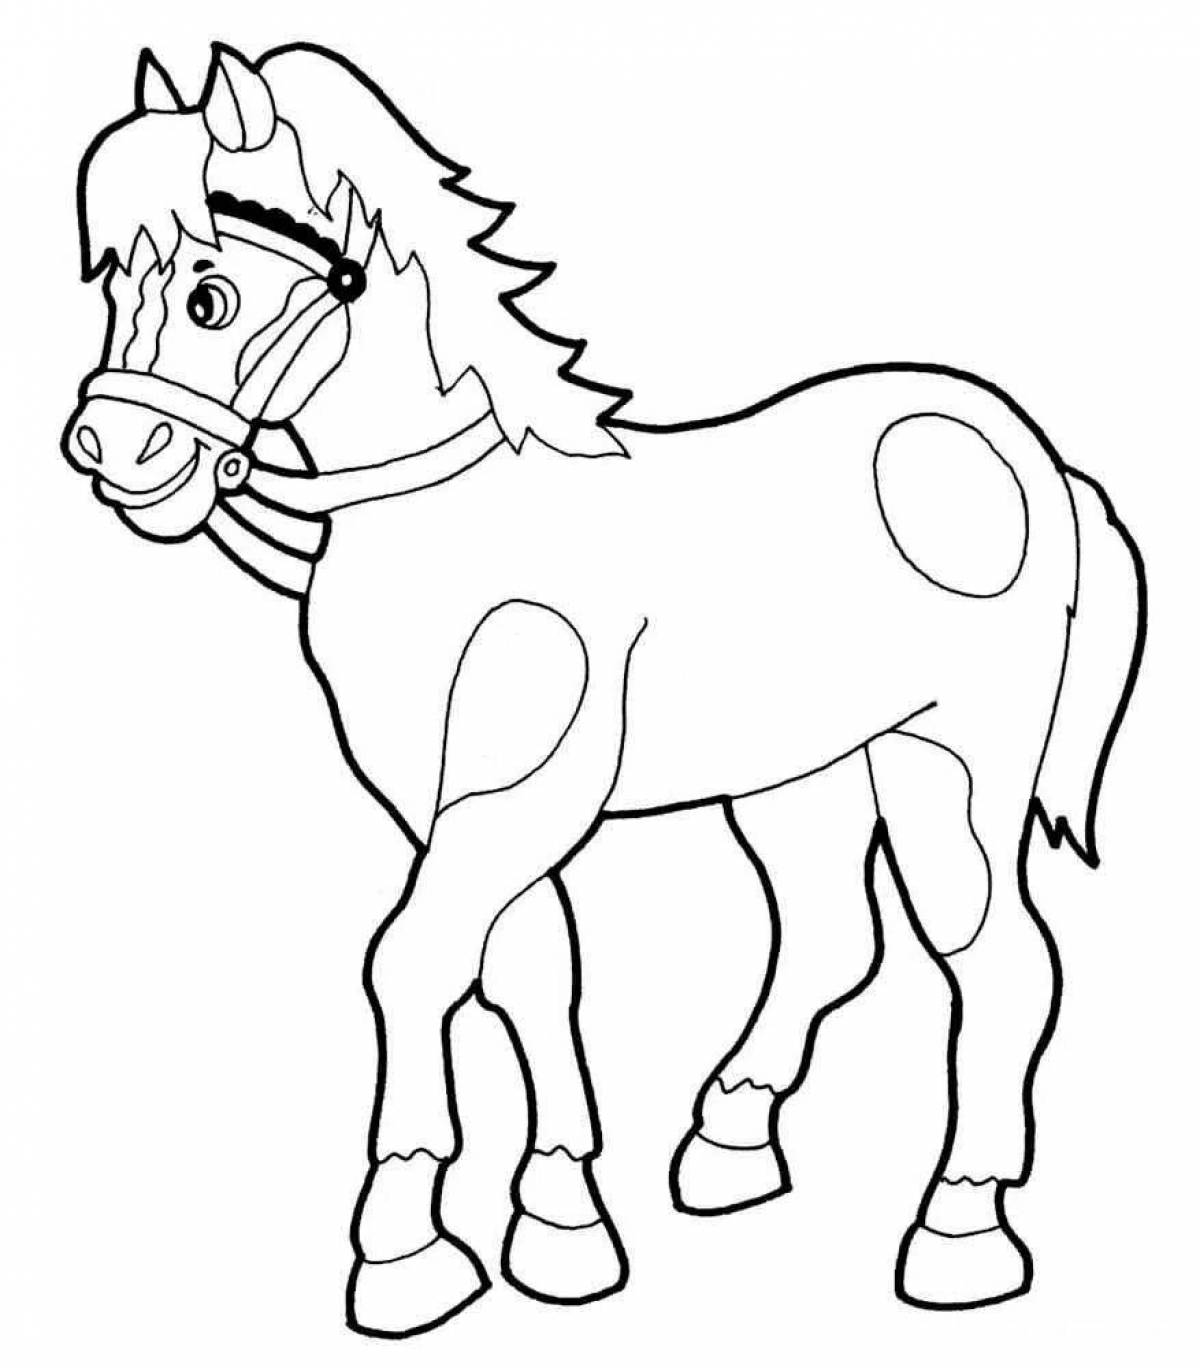 Величественный рисунок лошади для детей